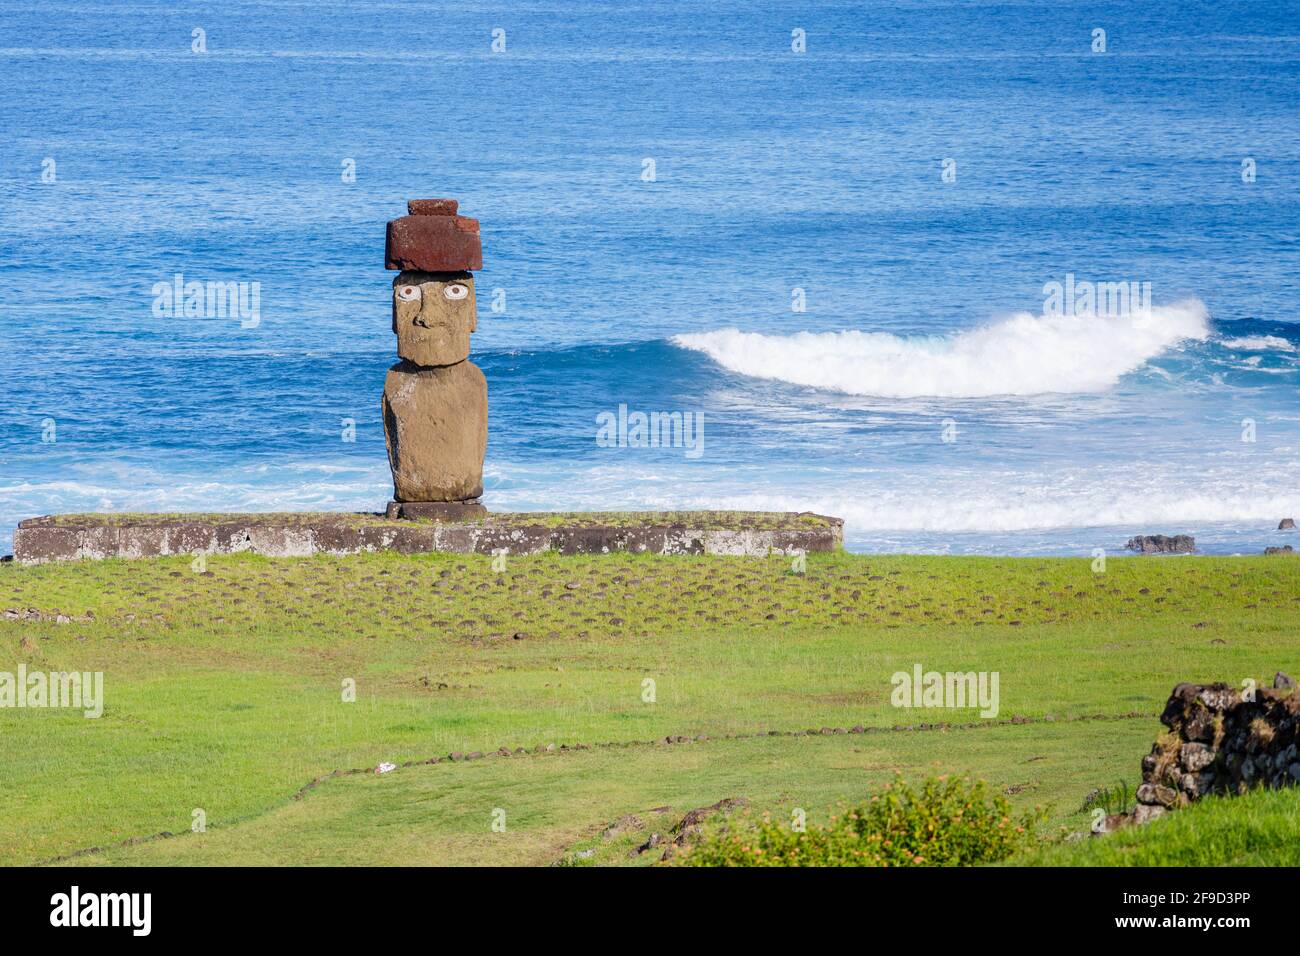 Restored Ahu Ko Te Riku moai (statue) with eyes and topknot, its back to the Pacific Ocean coast at Tahai, Hanga Roa, Easter Island (Rapa Nui), Chile Stock Photo